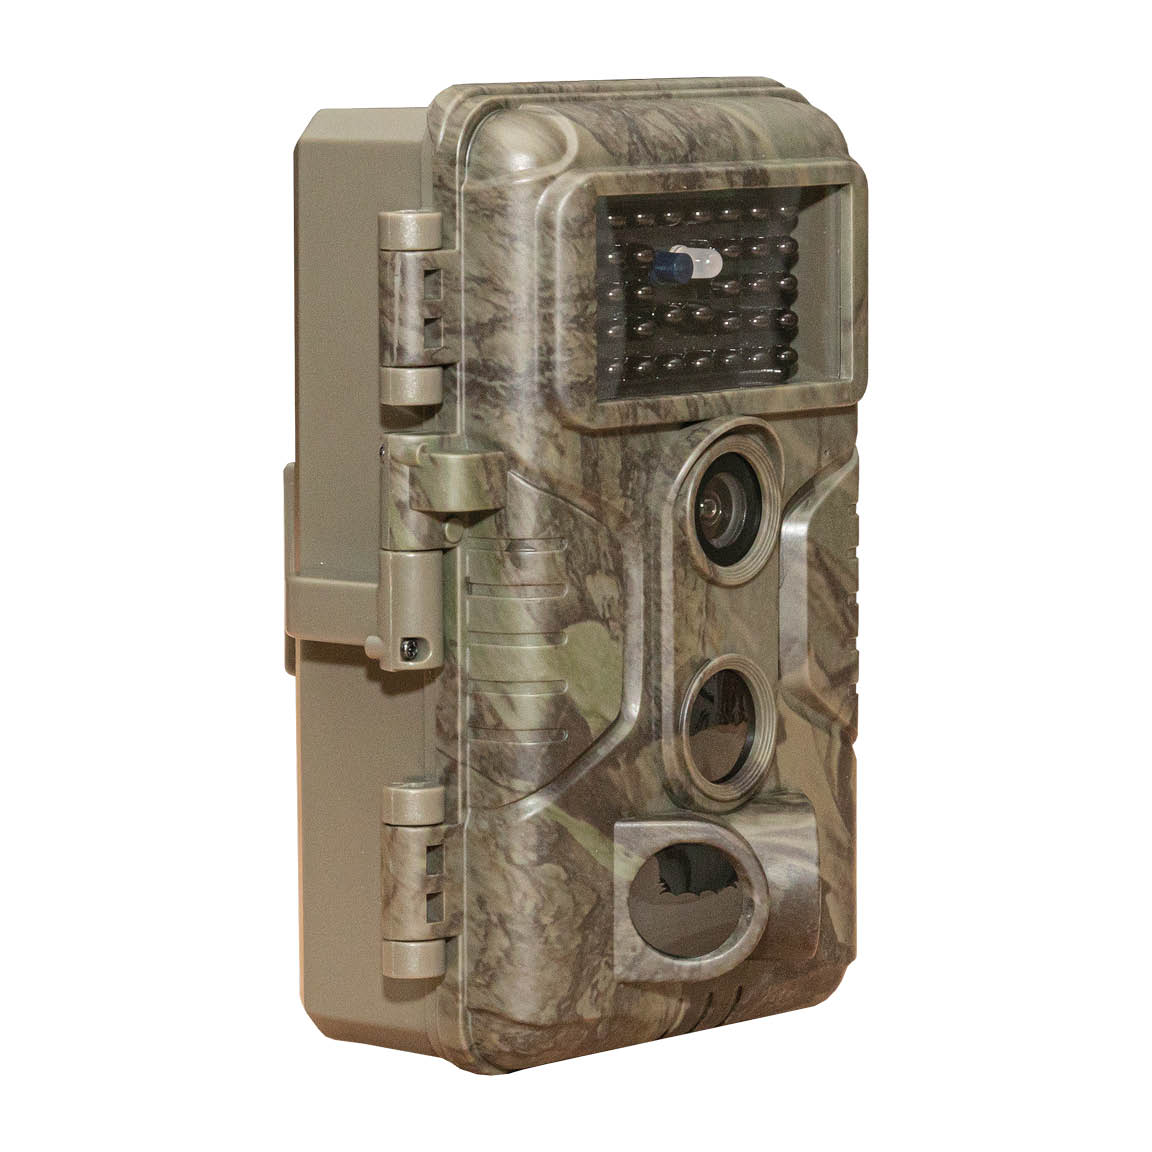 Pack 2 cámaras de caza GardePro A3S con pilas gratis para fototrampeo